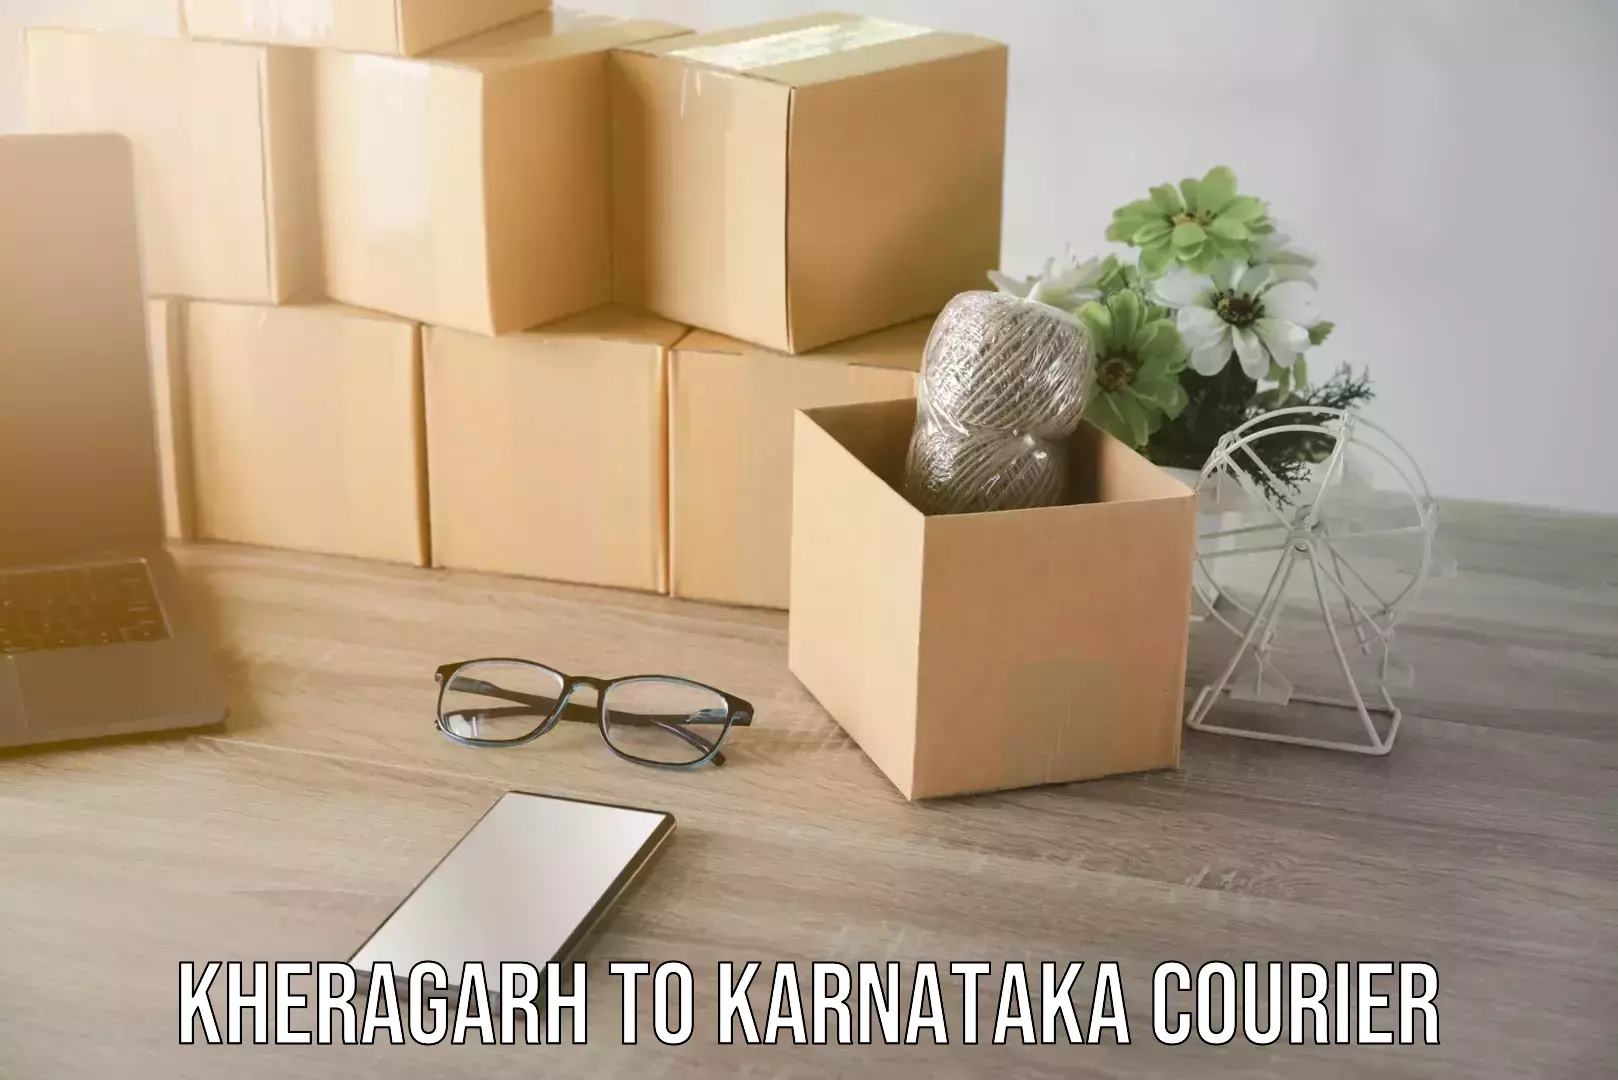 Furniture moving assistance Kheragarh to Karnataka